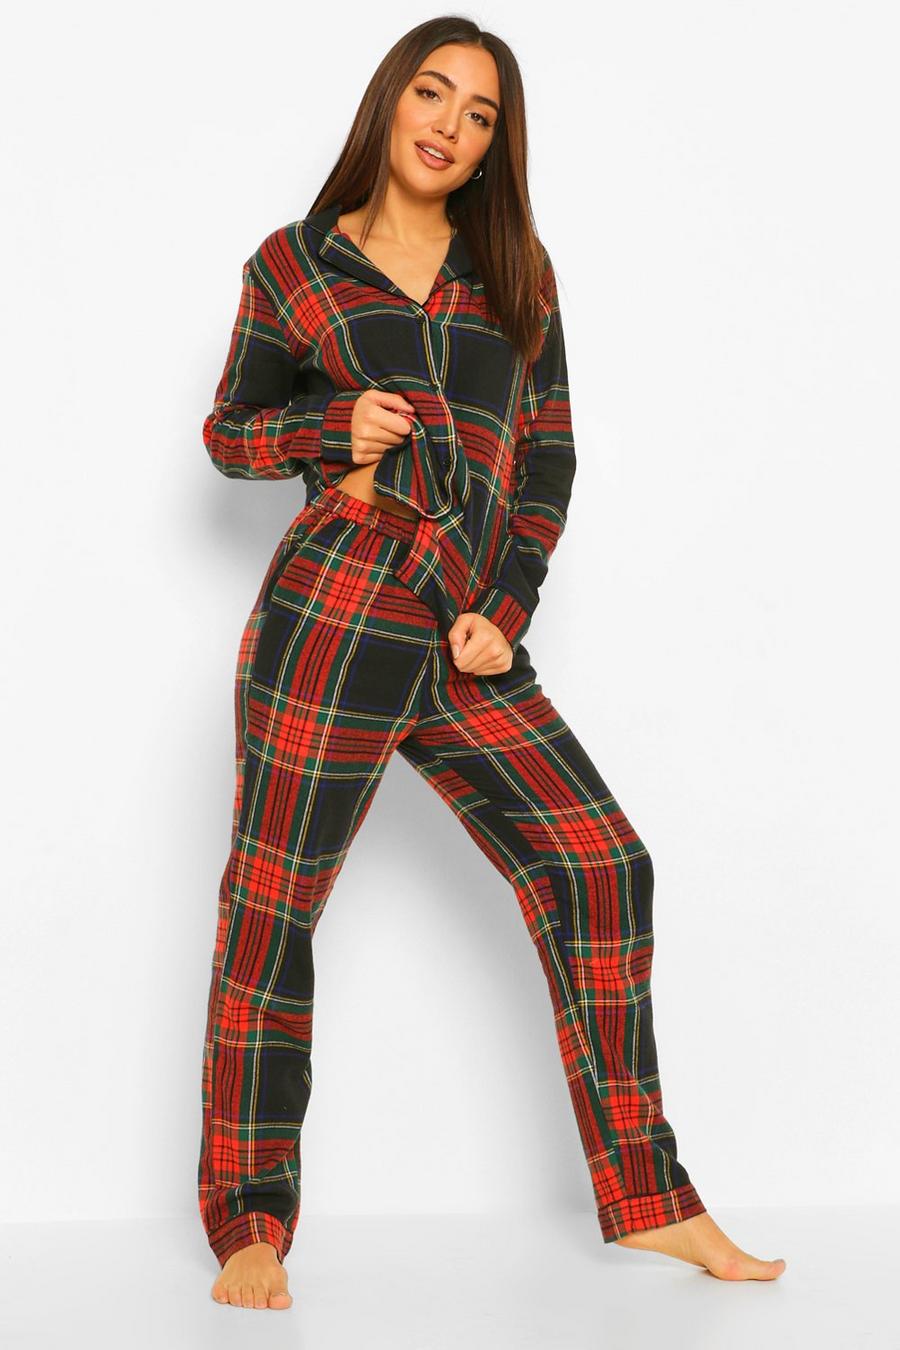 Flannel Check Print Christmas Pyjamas Pants Set